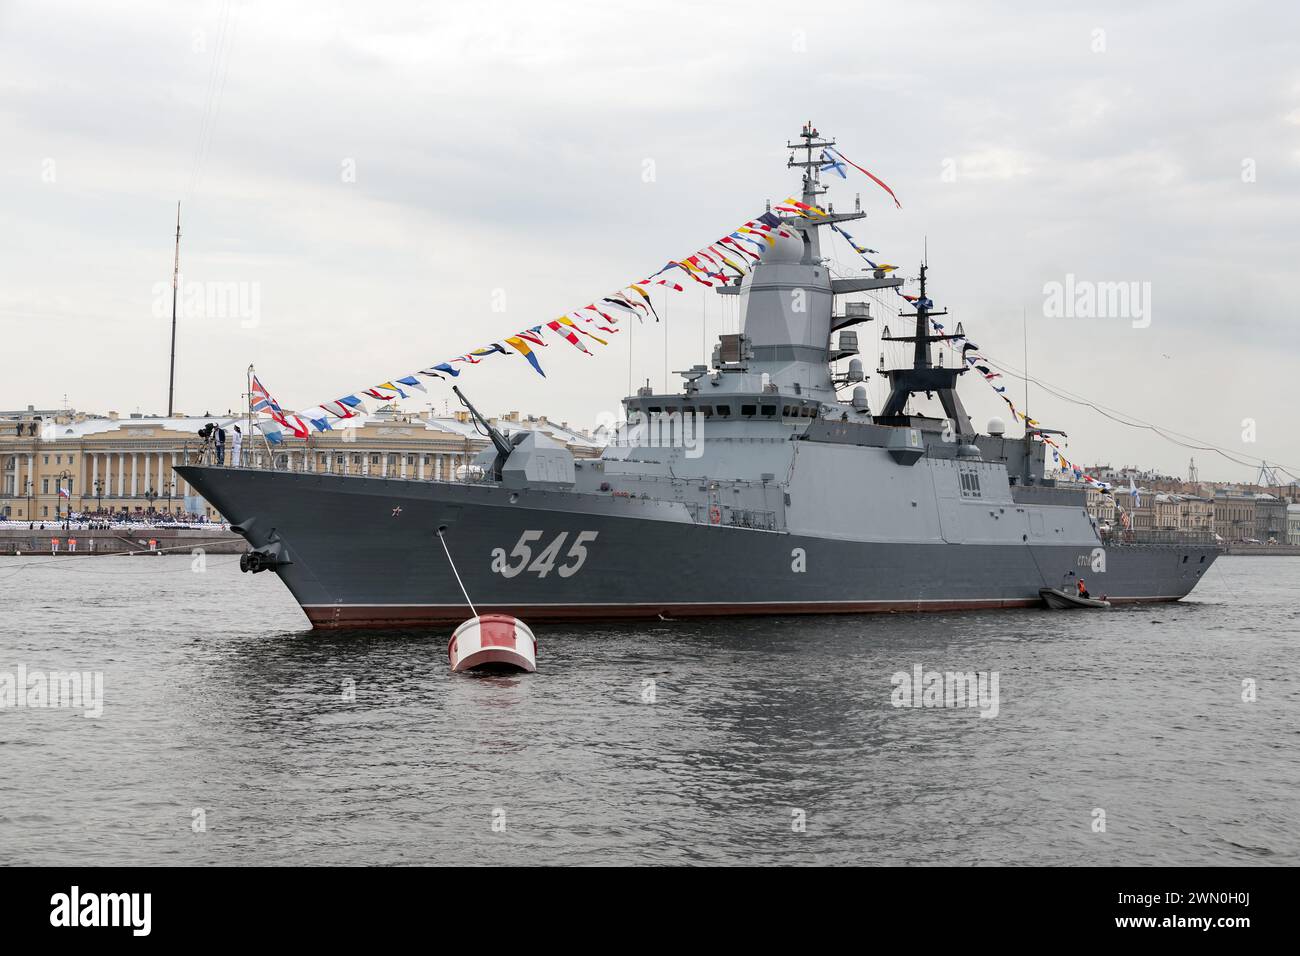 Saint-Pétersbourg, Russie - 28 juillet 2017 : le navire de guerre 545 est amarré sur la rivière Neva. Corvette de classe Steregushchy Banque D'Images